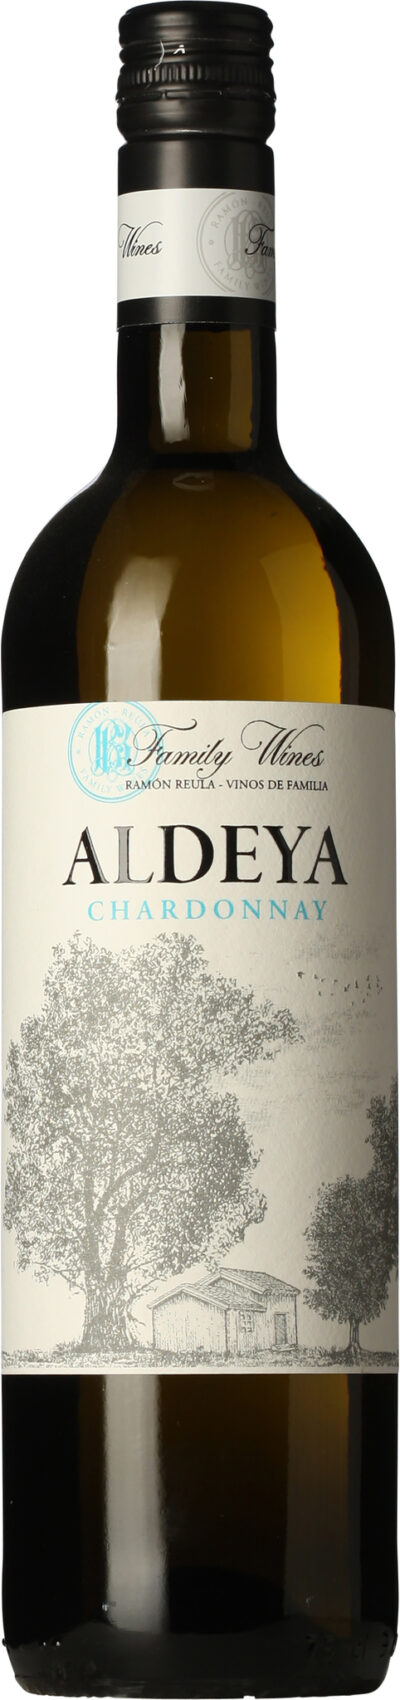 Aldeya Chardonnay Organc